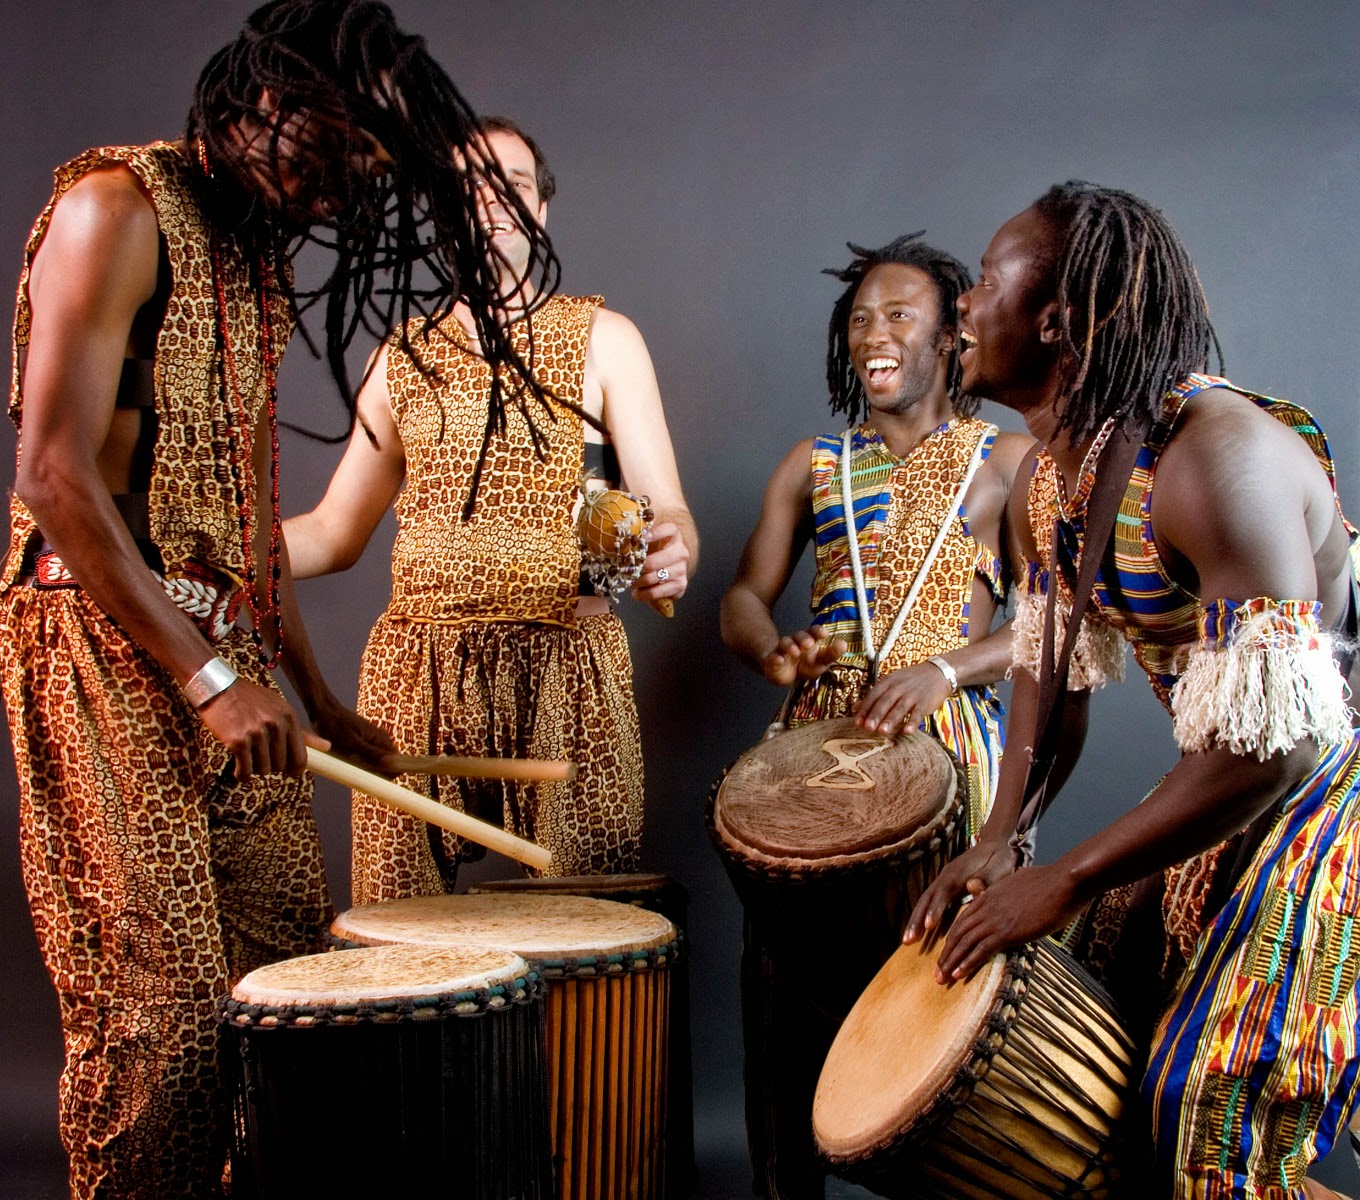 Ethnic music best. Африканские музыканты. Музыканты африканцы. Музыкальная культура Африки. Традиционный музыкальный инструмент Африки.